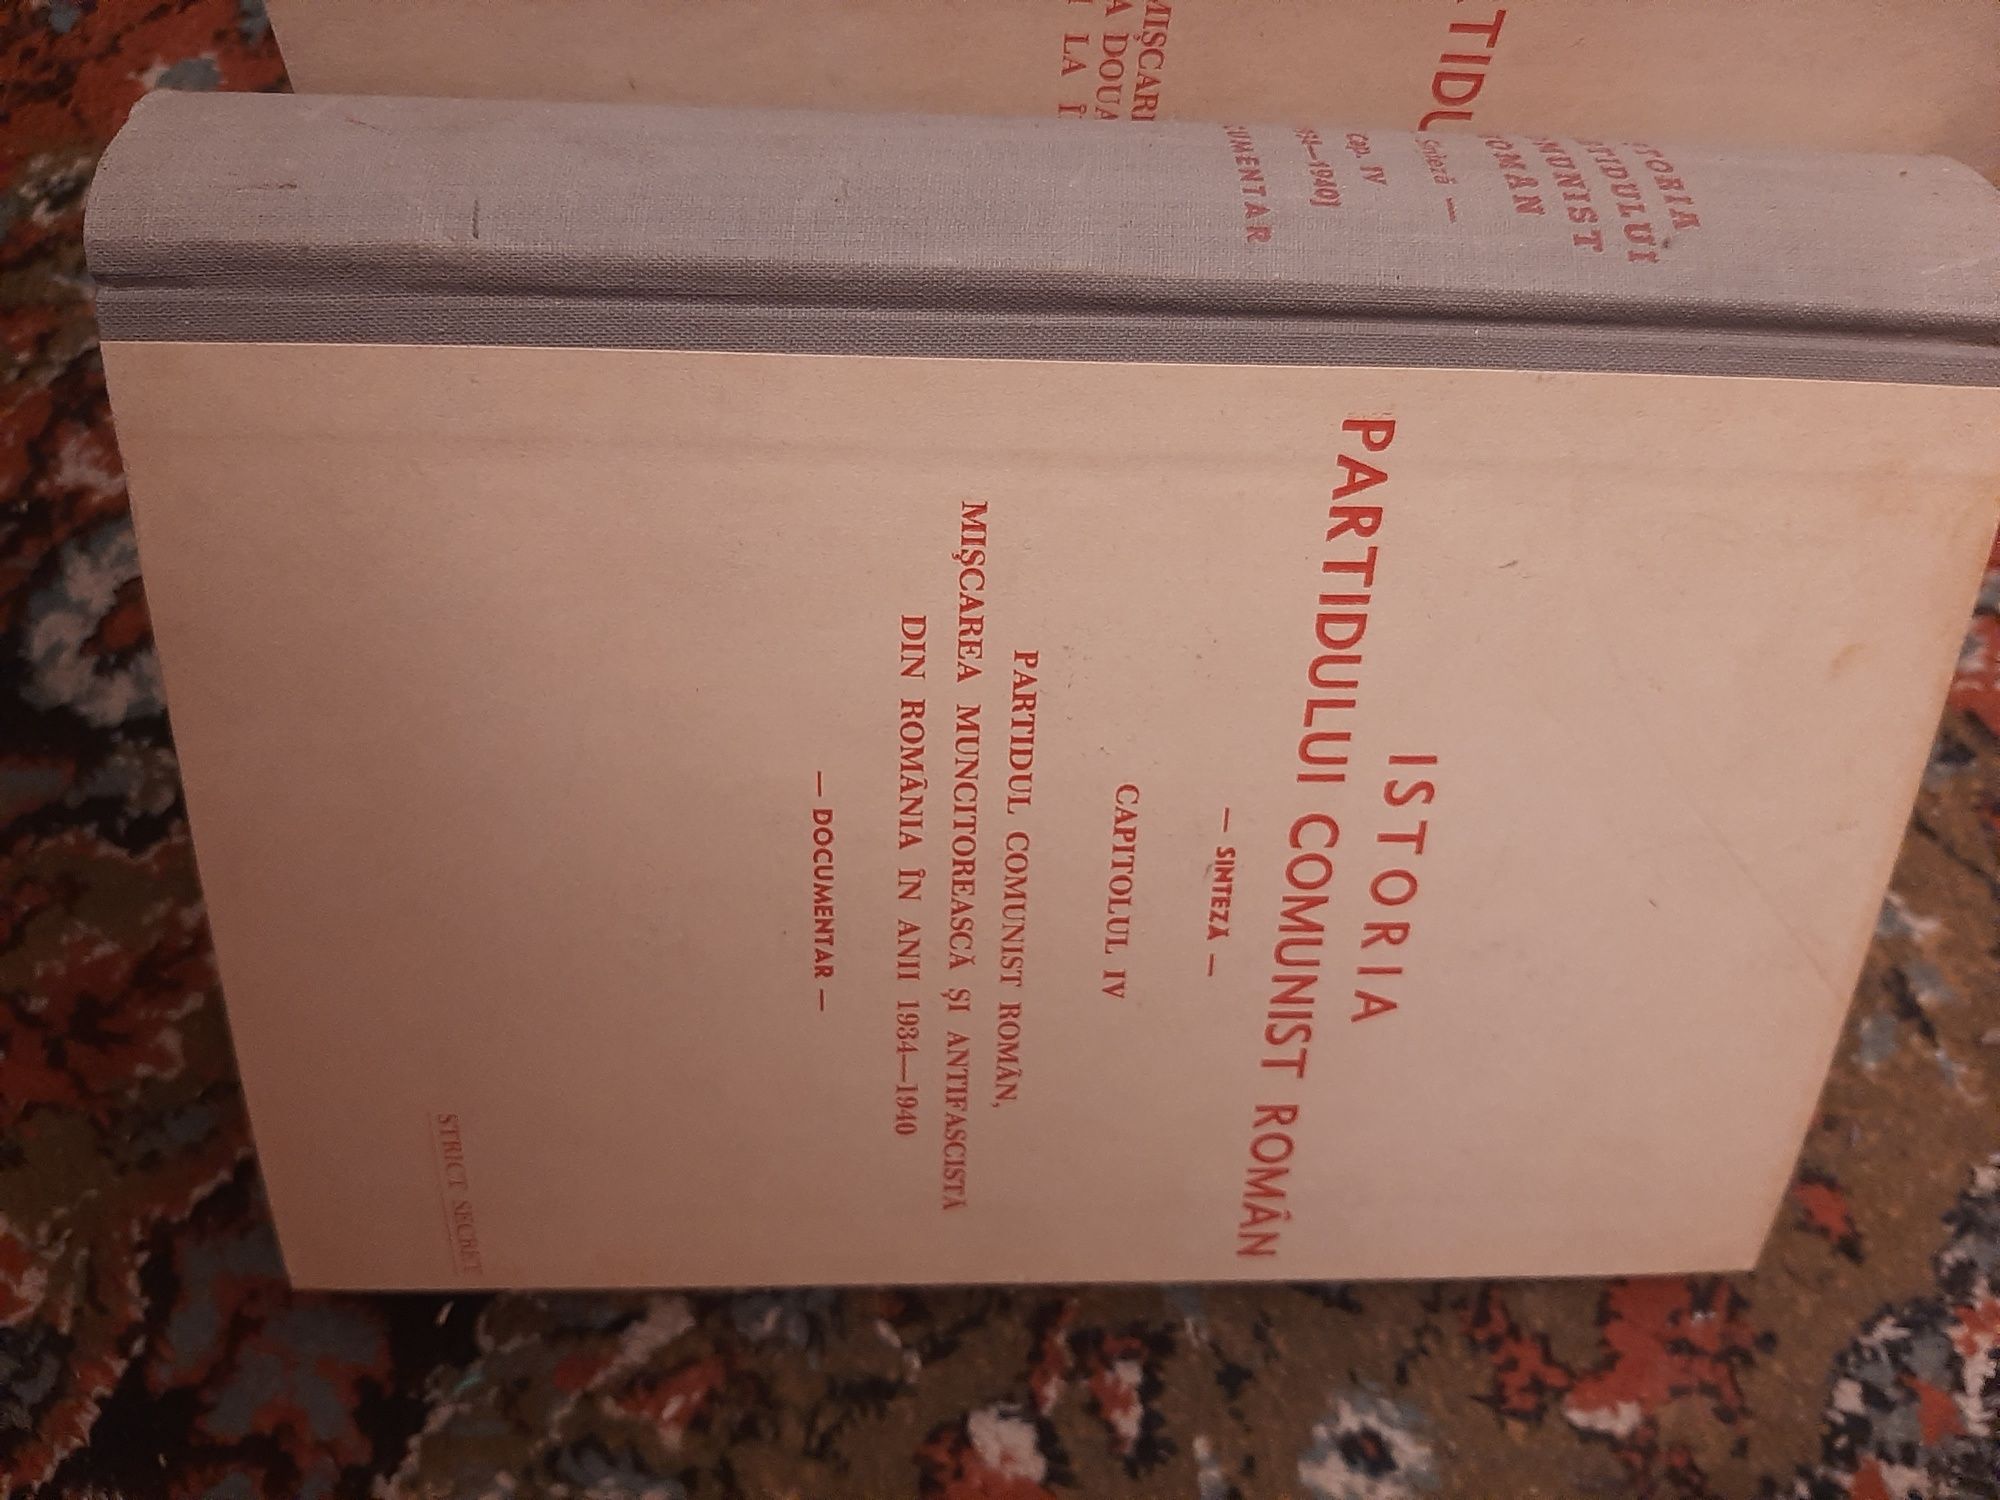 Istoria Partidului Comunist Roman -6 volume